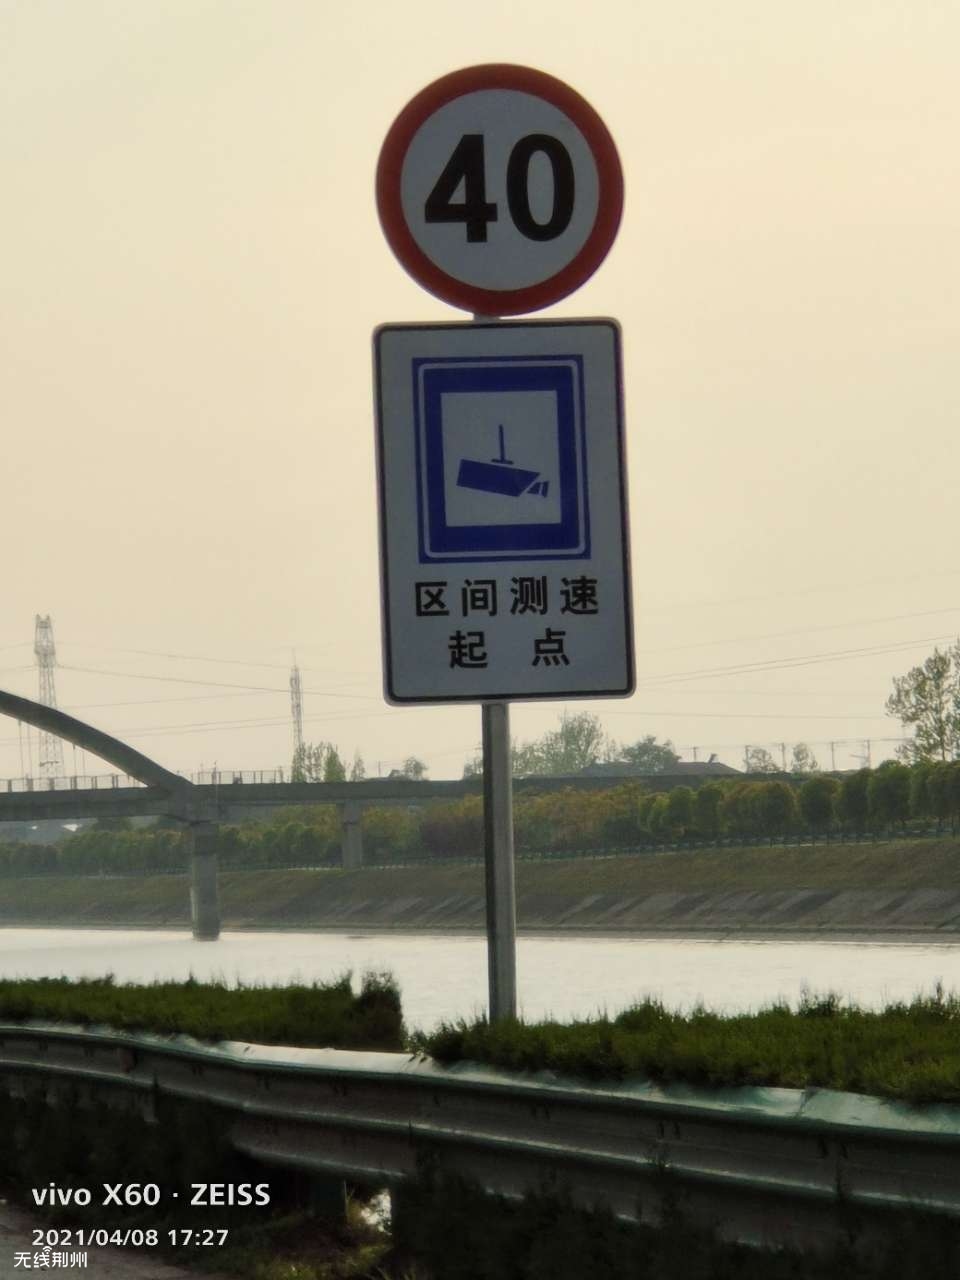 引江济汉堤顶公路前期媒体公示的限速60公里,今天挂牌的限速成了40